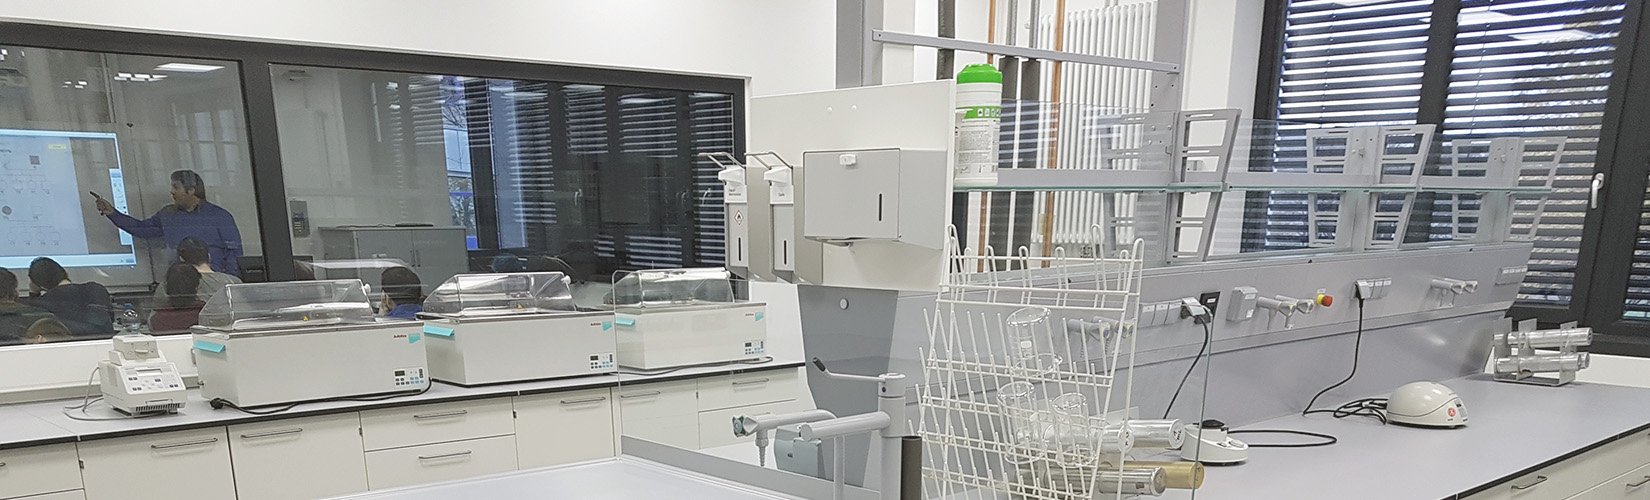 Blick in ein Labor